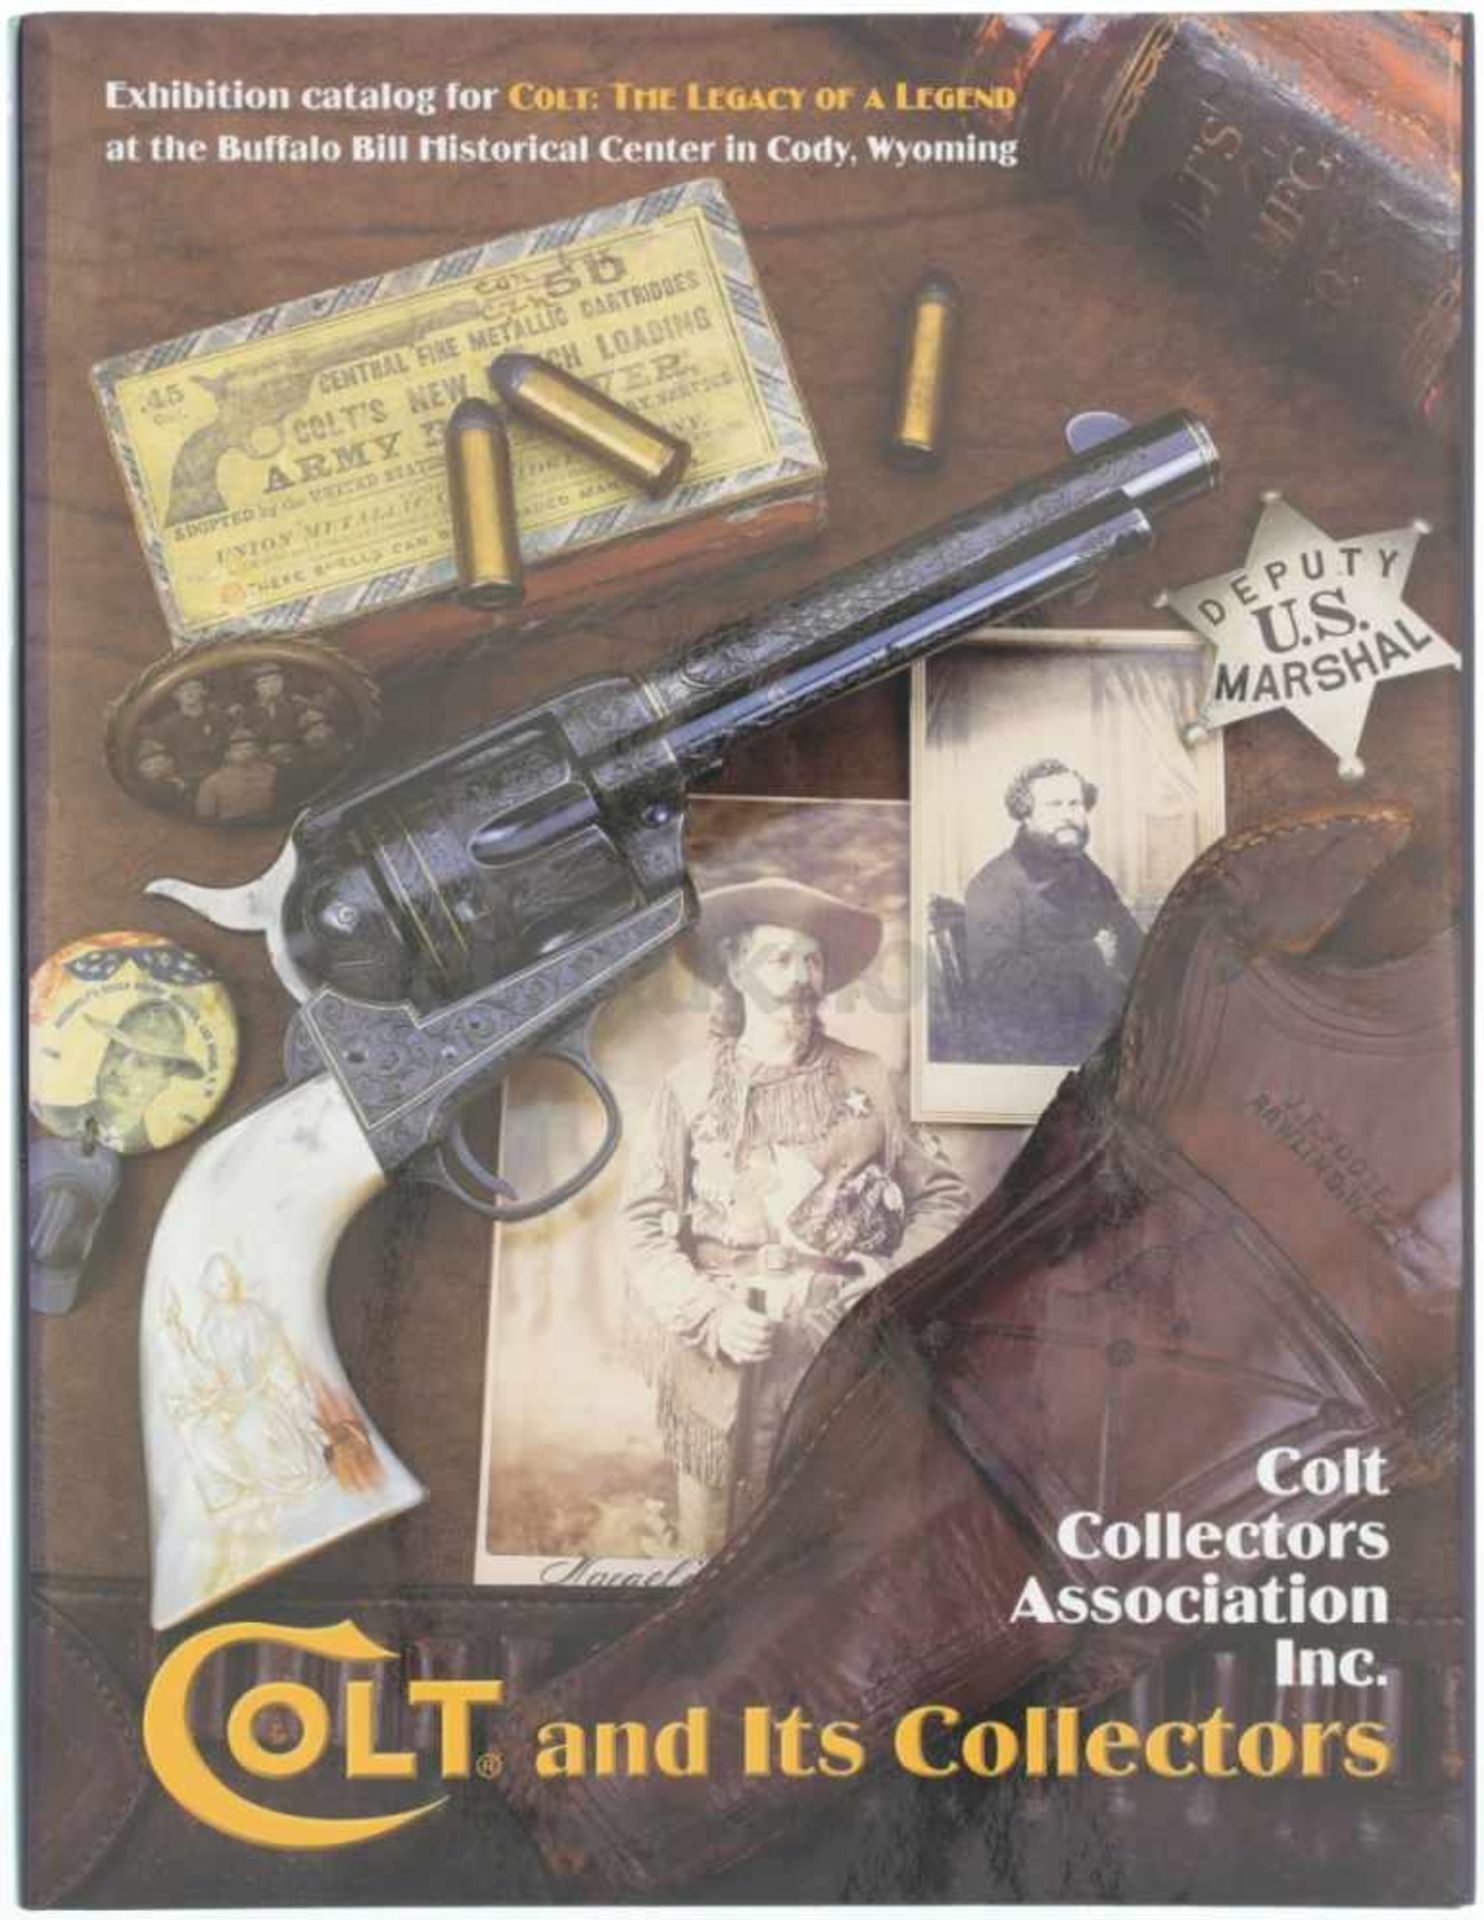 Colt and Its Collectors von Colt Collectors Association Inc., 400 Seiten in englischer Sprache mit